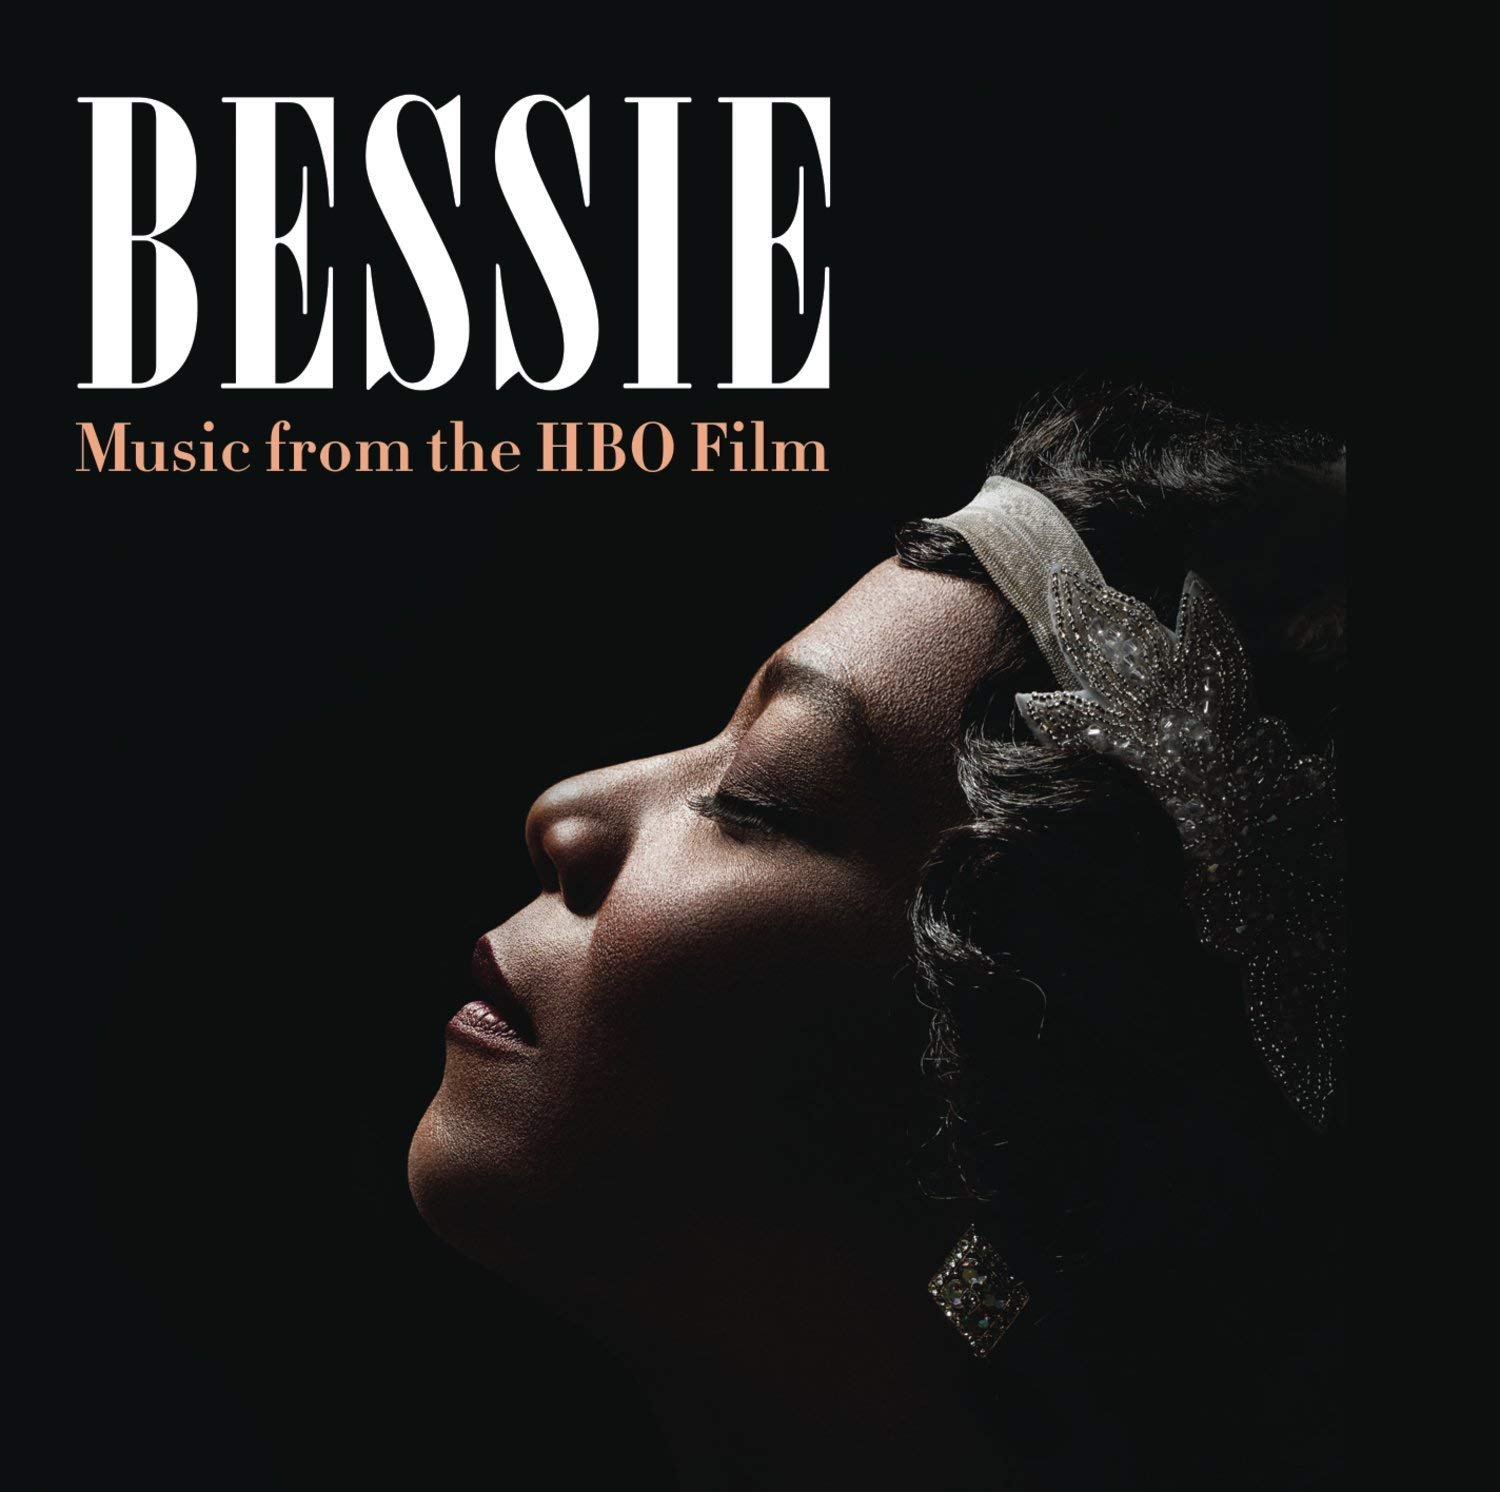 Bessie Soundtrack.jpg